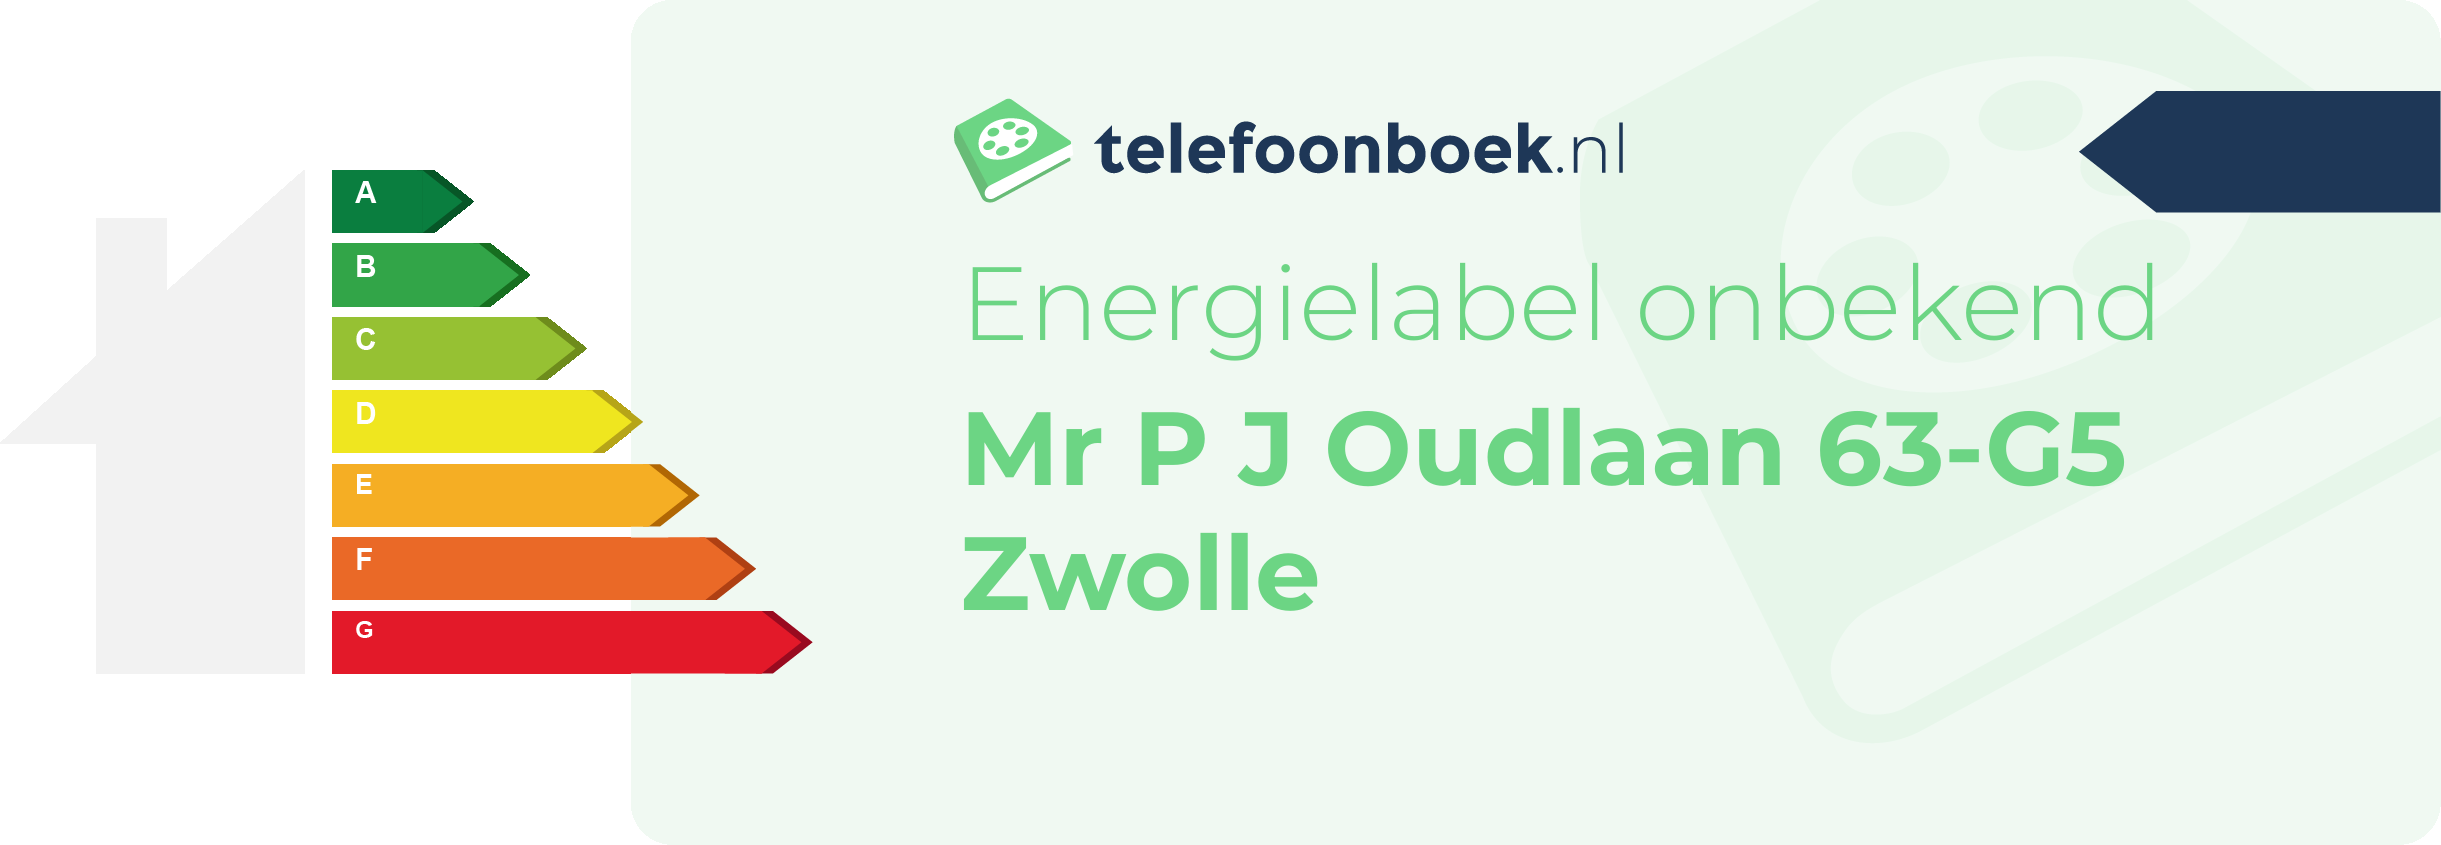 Energielabel Mr P J Oudlaan 63-G5 Zwolle